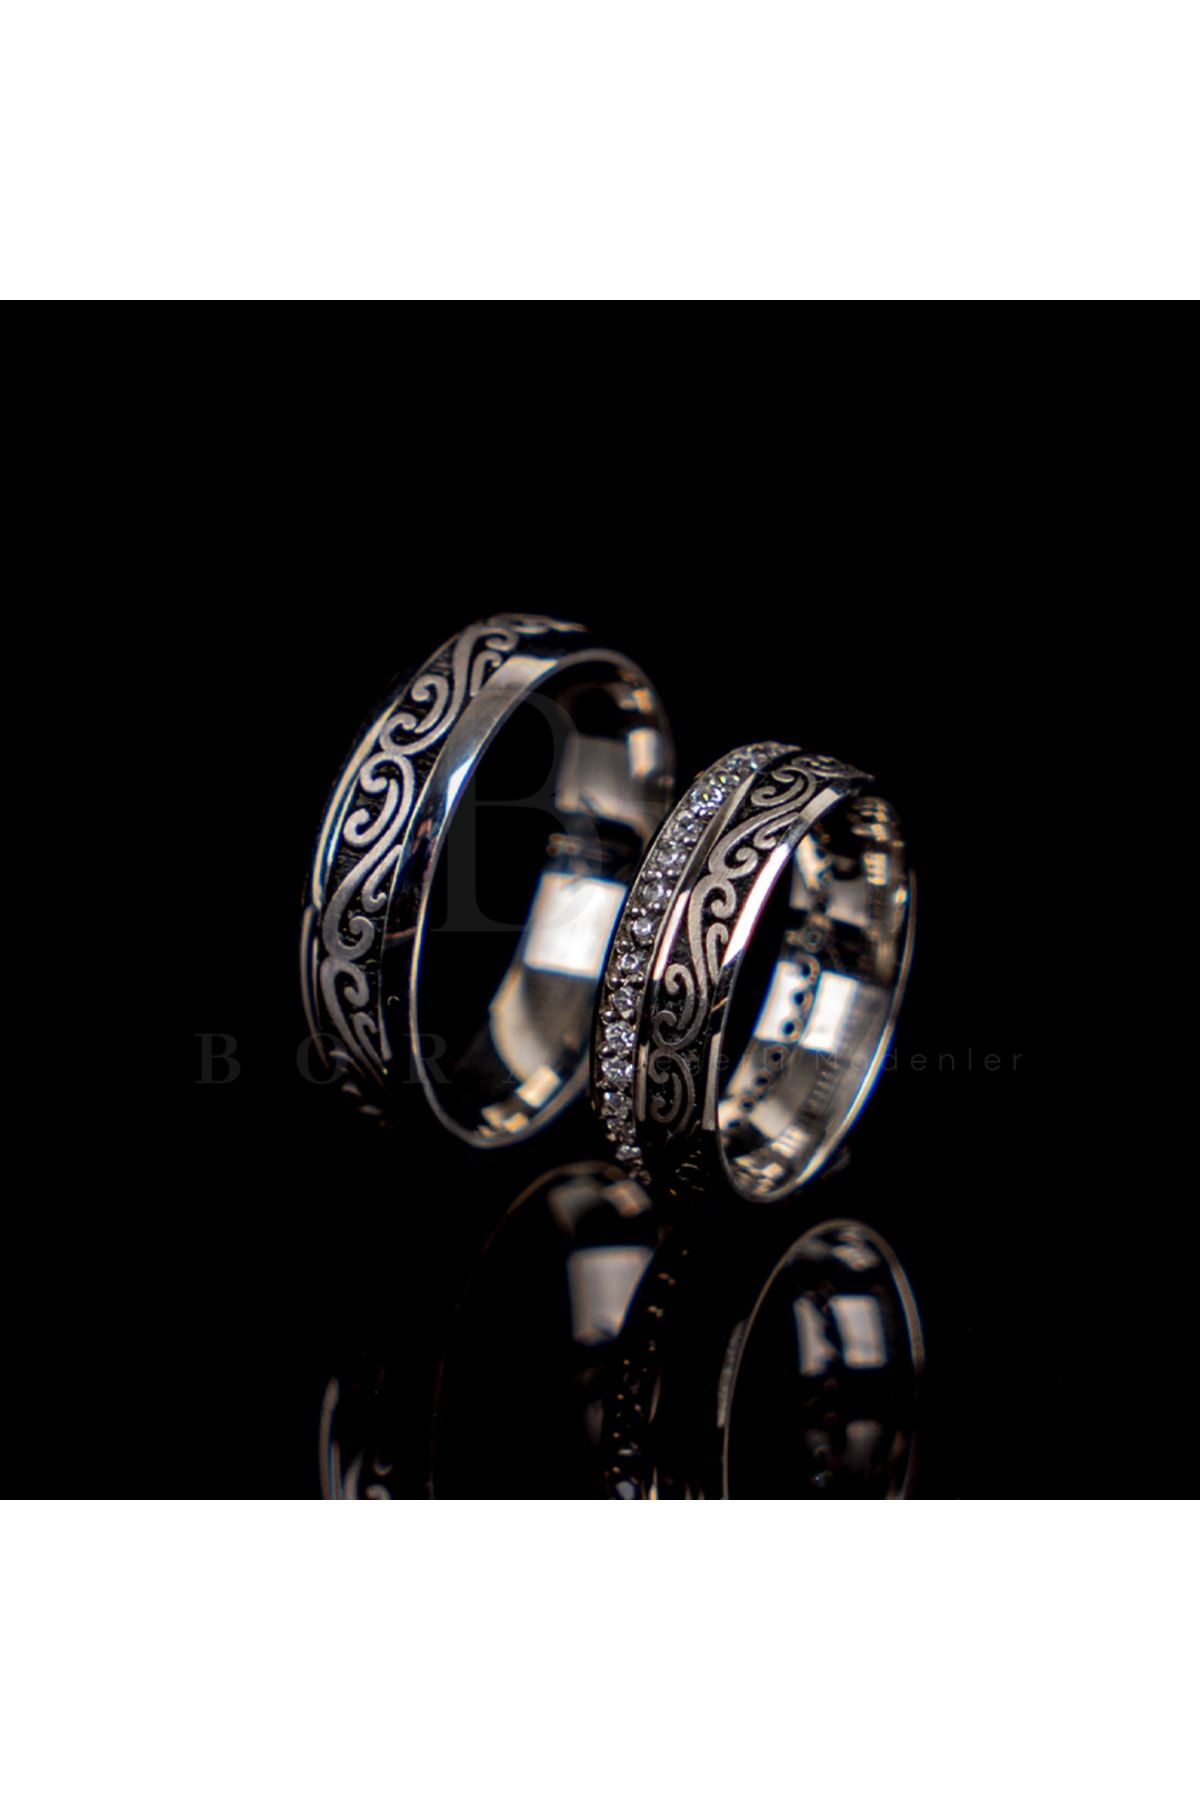 Bora Değerli Madenler Gümüş Oyma Alyans Nişan Yüzüğü Çift Alyansı